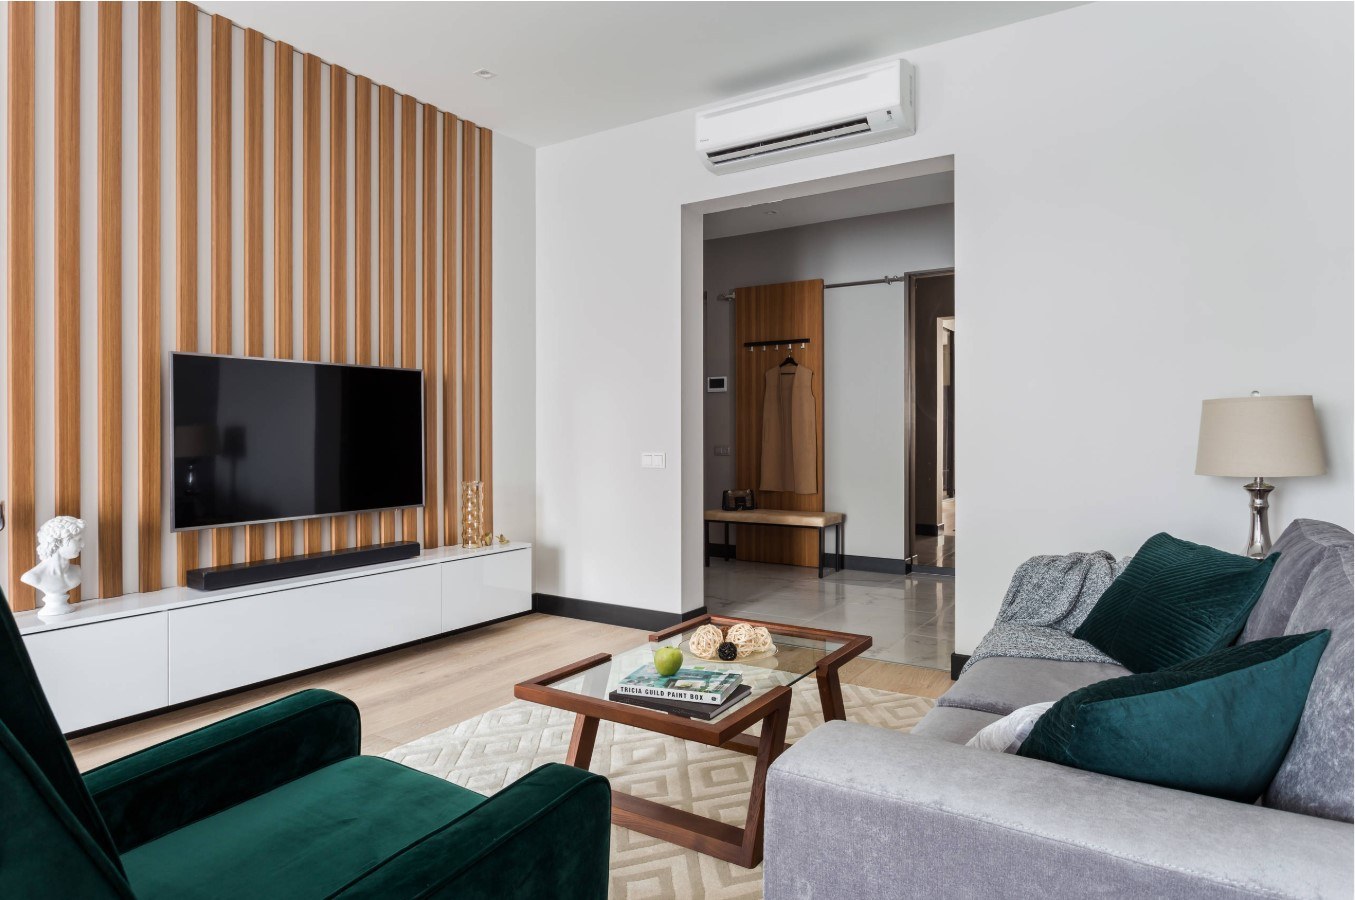 Гостиная 20 кв м: красивые варианты дизайна интерьера современной гостиной комнаты в частном деревянном доме или квартире, 130 фото